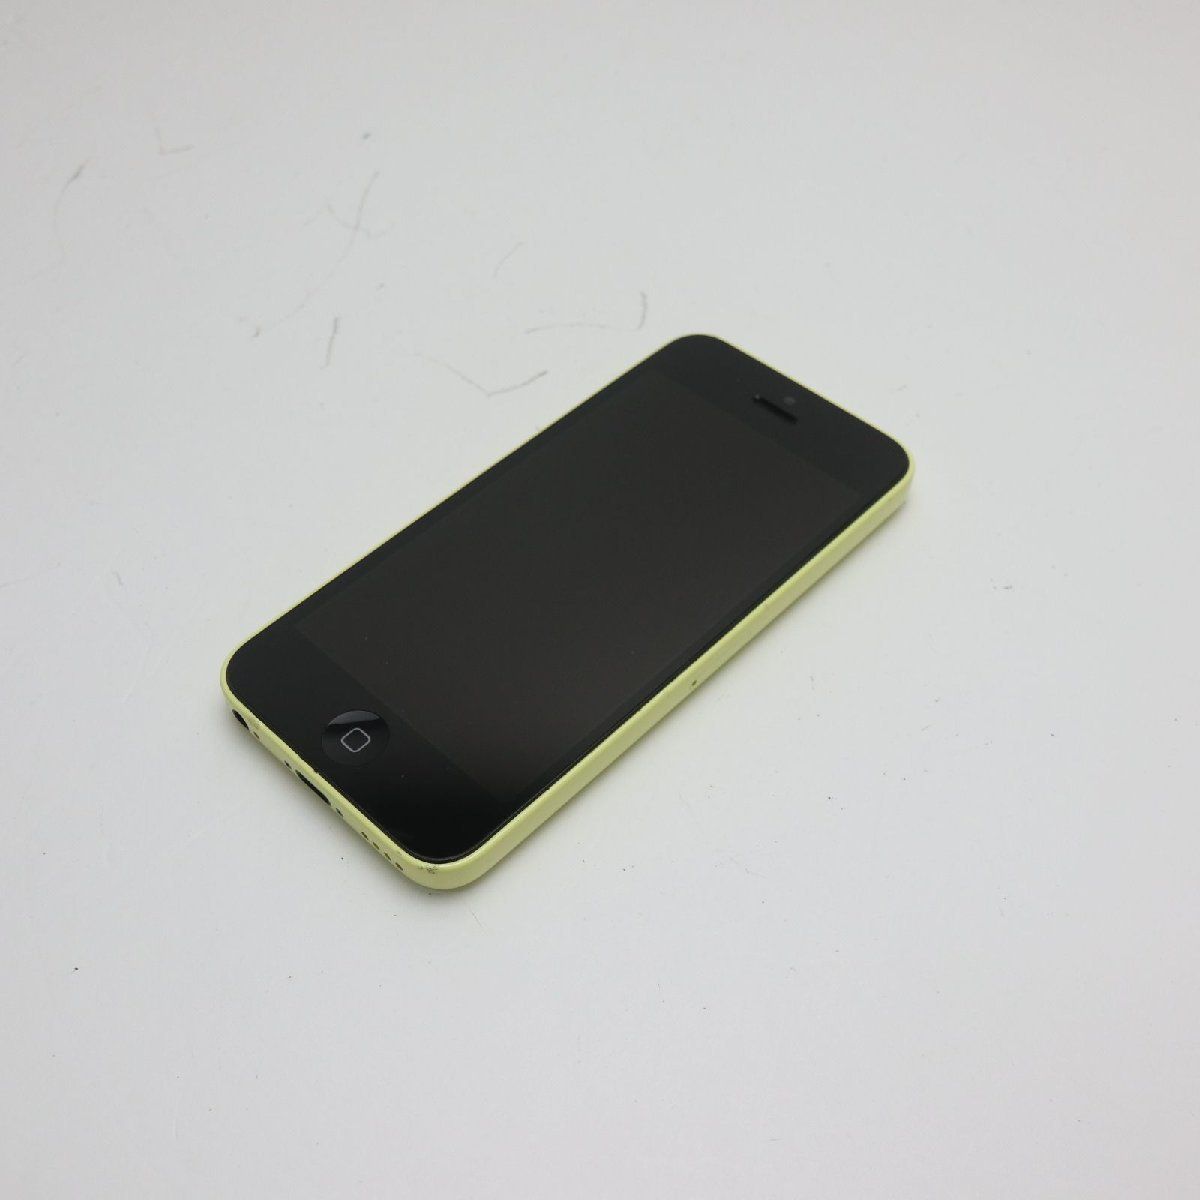 美品 DoCoMo iPhone5c 16GB イエロー 即日発送 スマホ Apple DoCoMo 